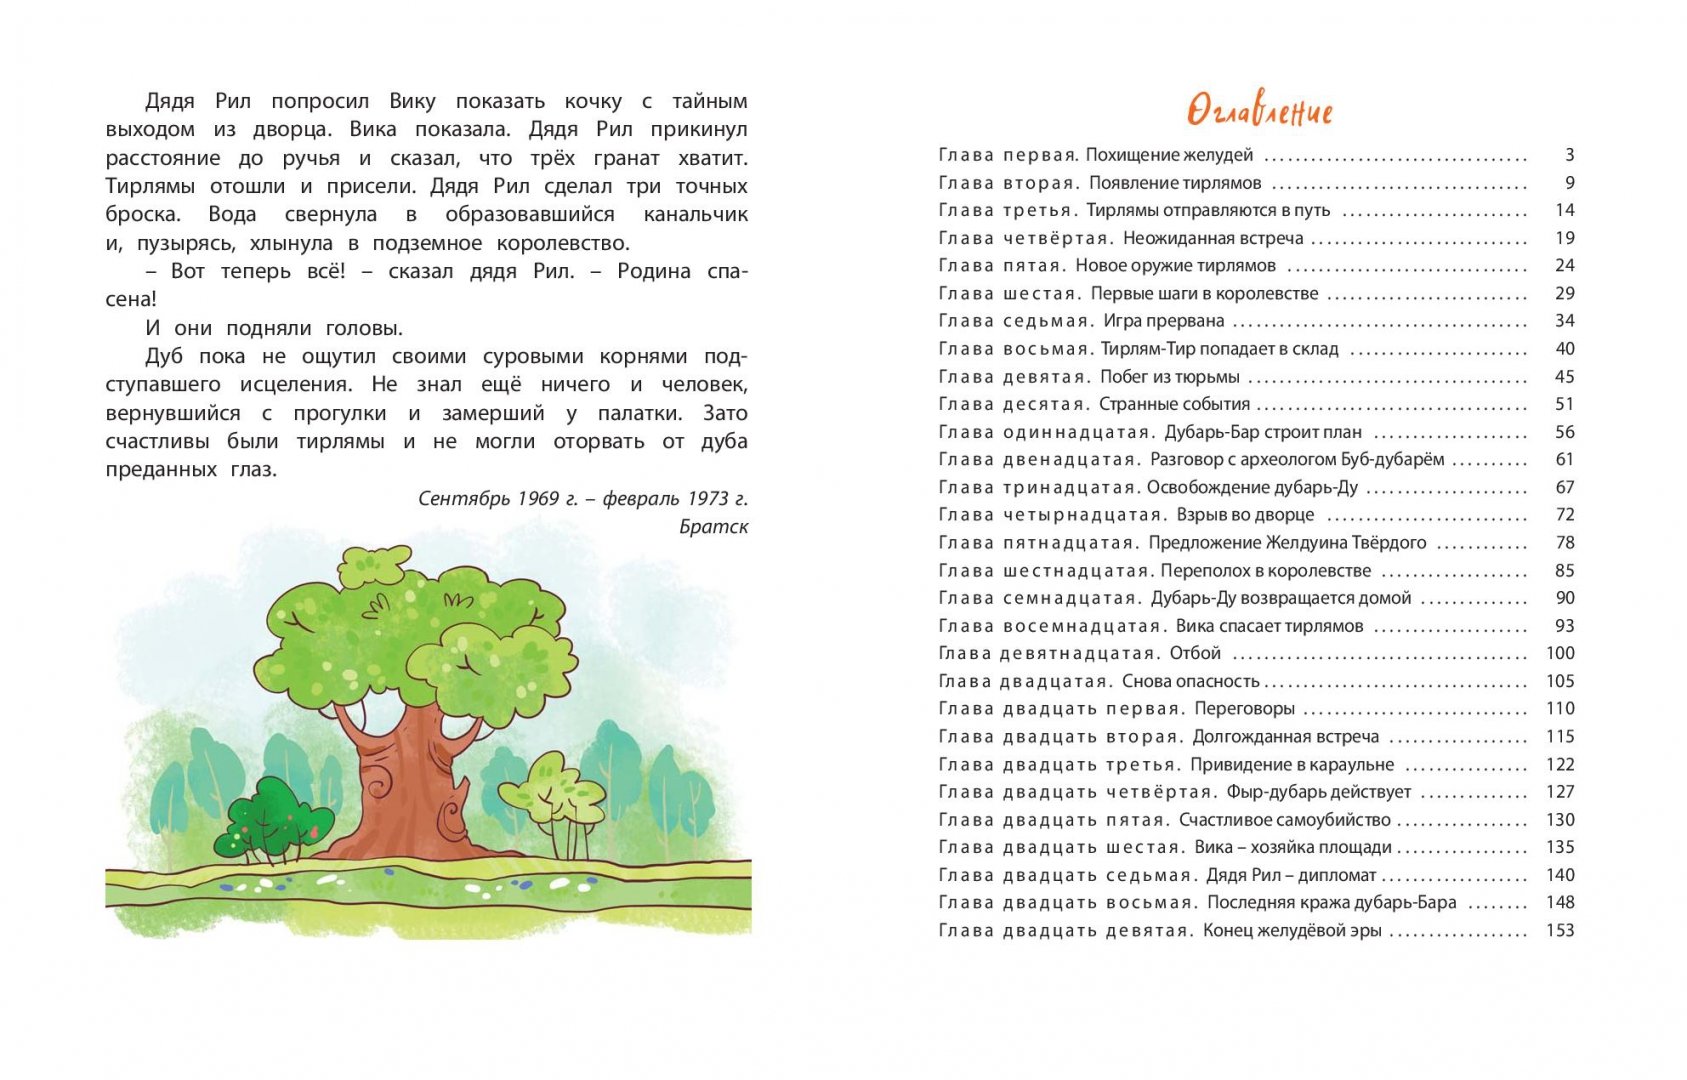 Иллюстрация 4 из 50 для Тирлямы в подземном королевстве - Геннадий Михасенко | Лабиринт - книги. Источник: Лабиринт